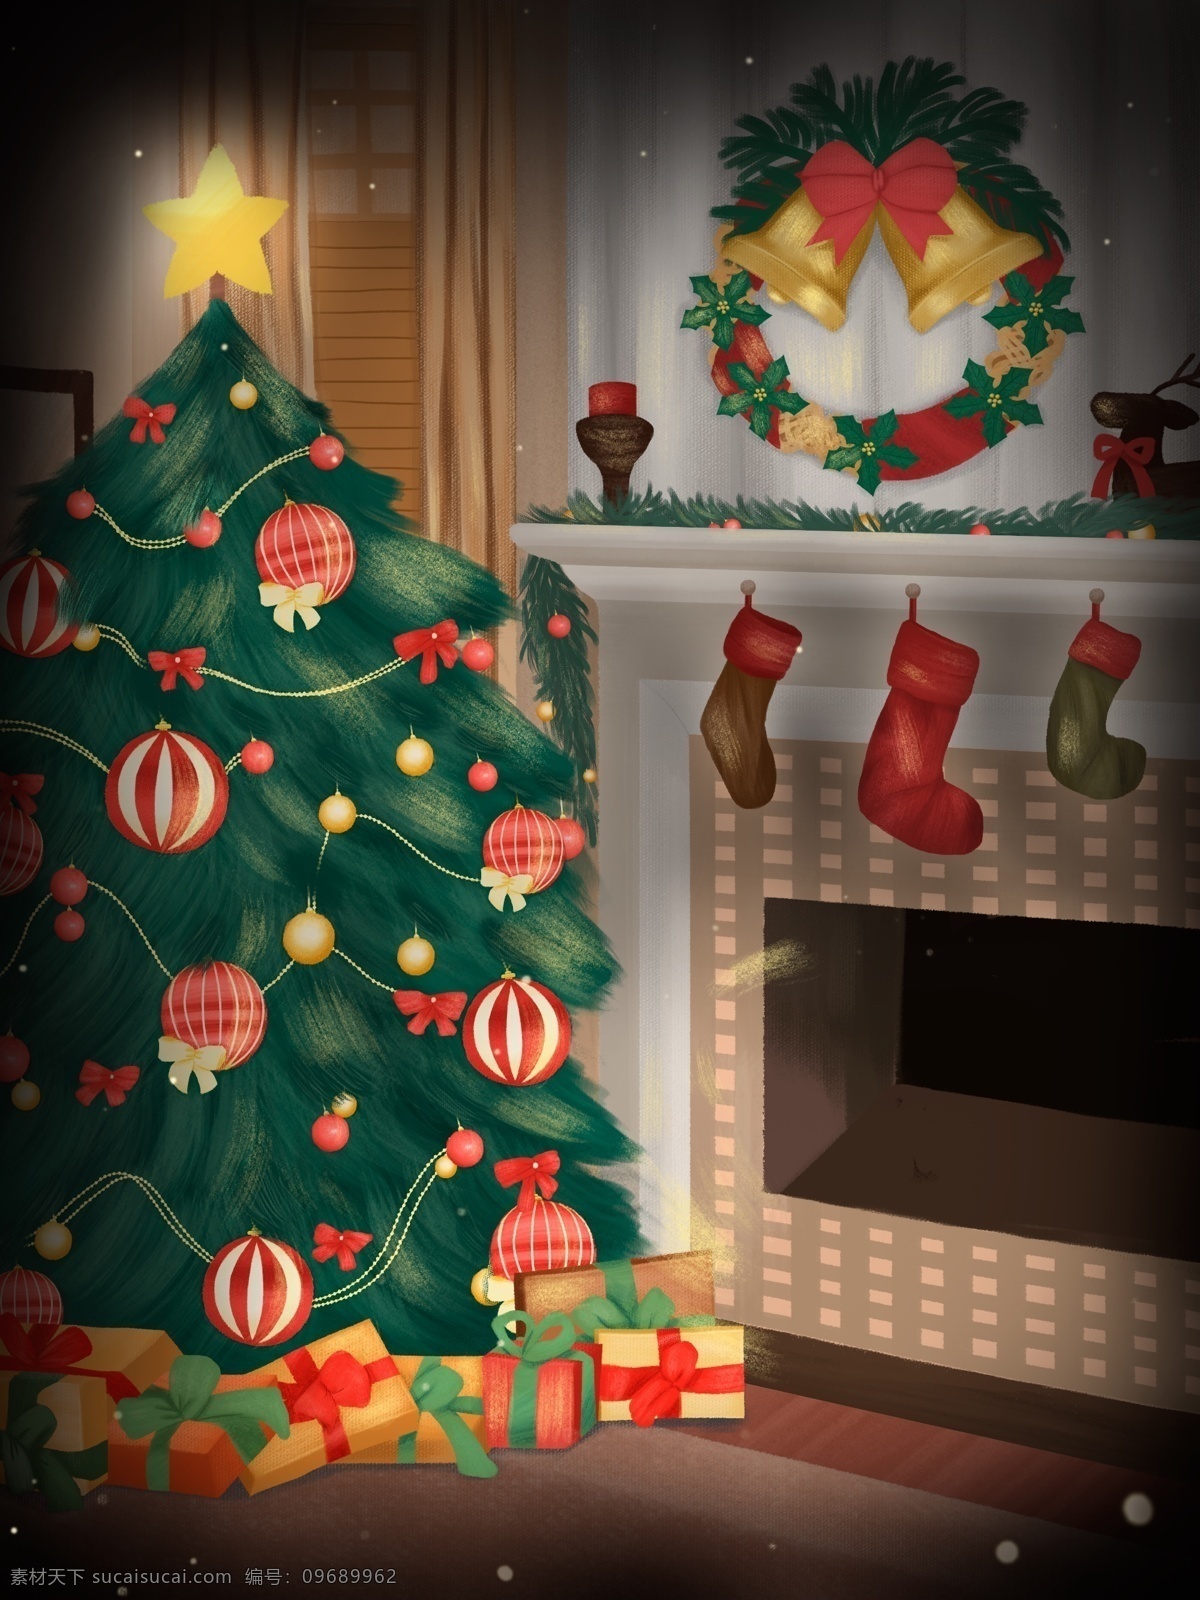 卡通 冬天 圣诞节 室内 插画 背景 圣诞装饰 圣诞树 庆祝 圣诞礼物 圣诞节快乐 祝福 圣诞帽 圣诞